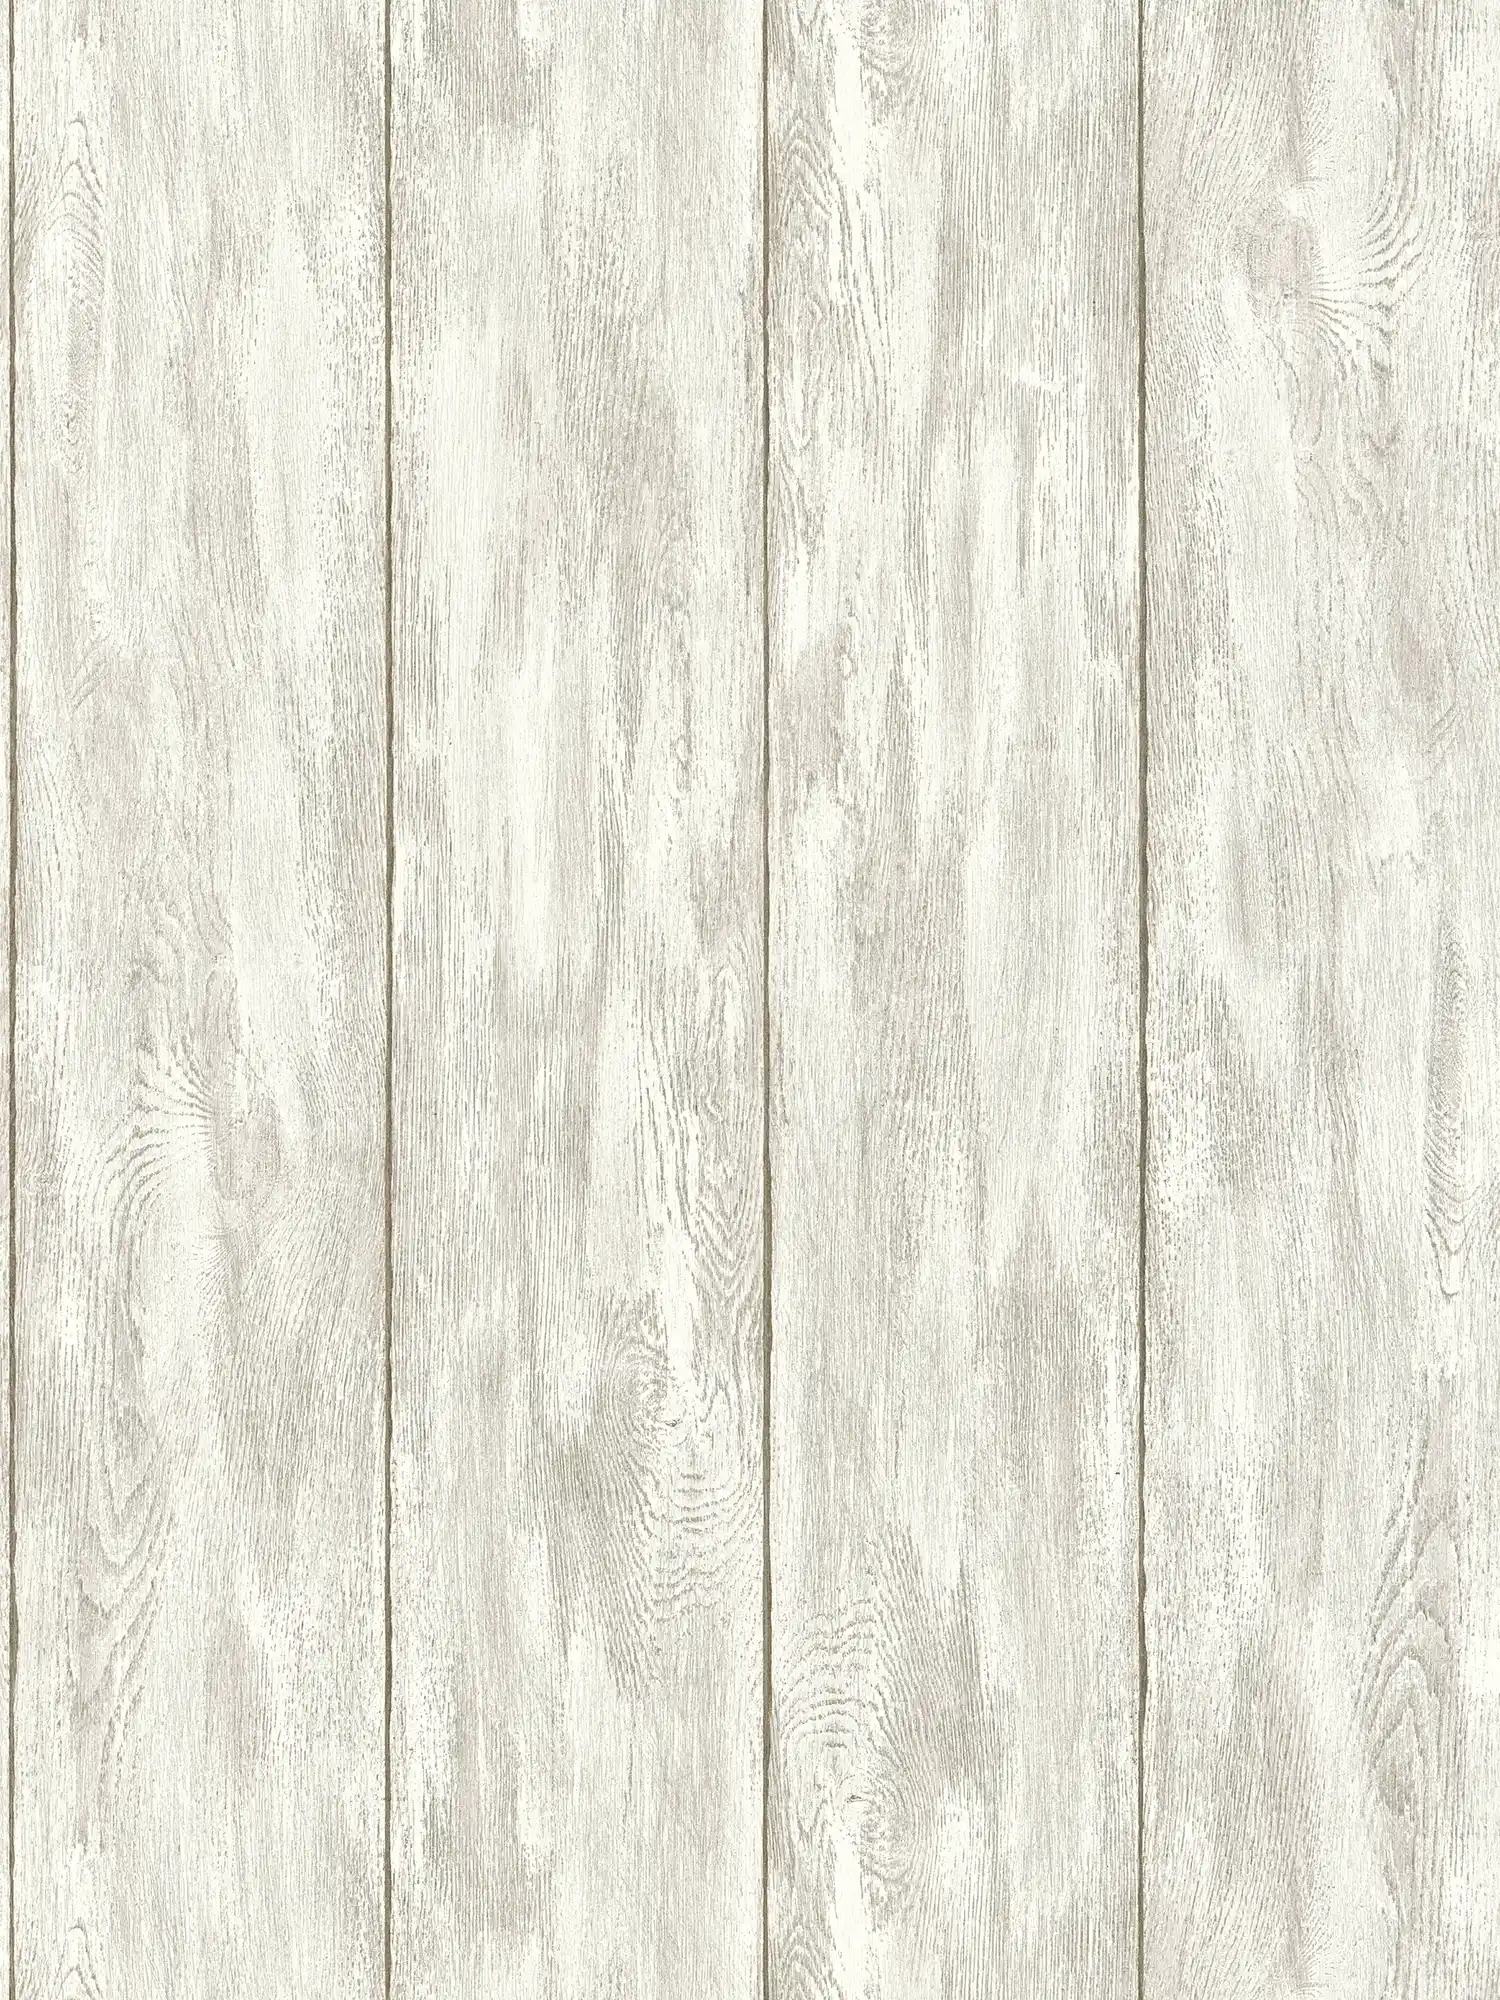         Tapete Holz-Optik für ein gemütliches Landhaus-Feeling – Beige, Creme, Grau
    